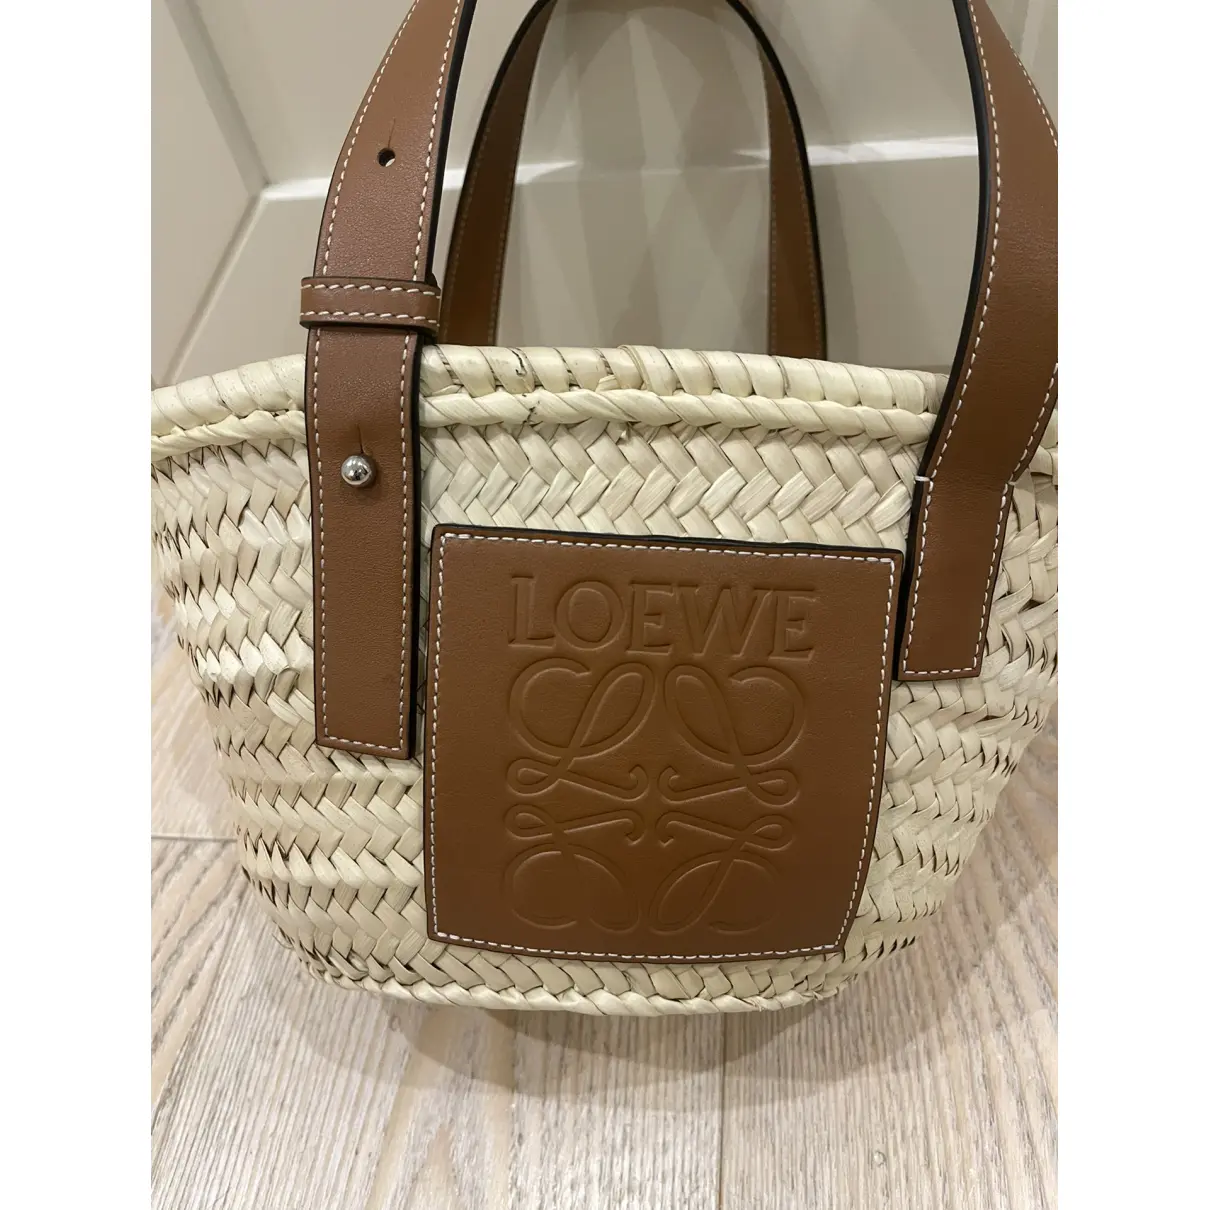 Buy Loewe Basket Bag leather tote online